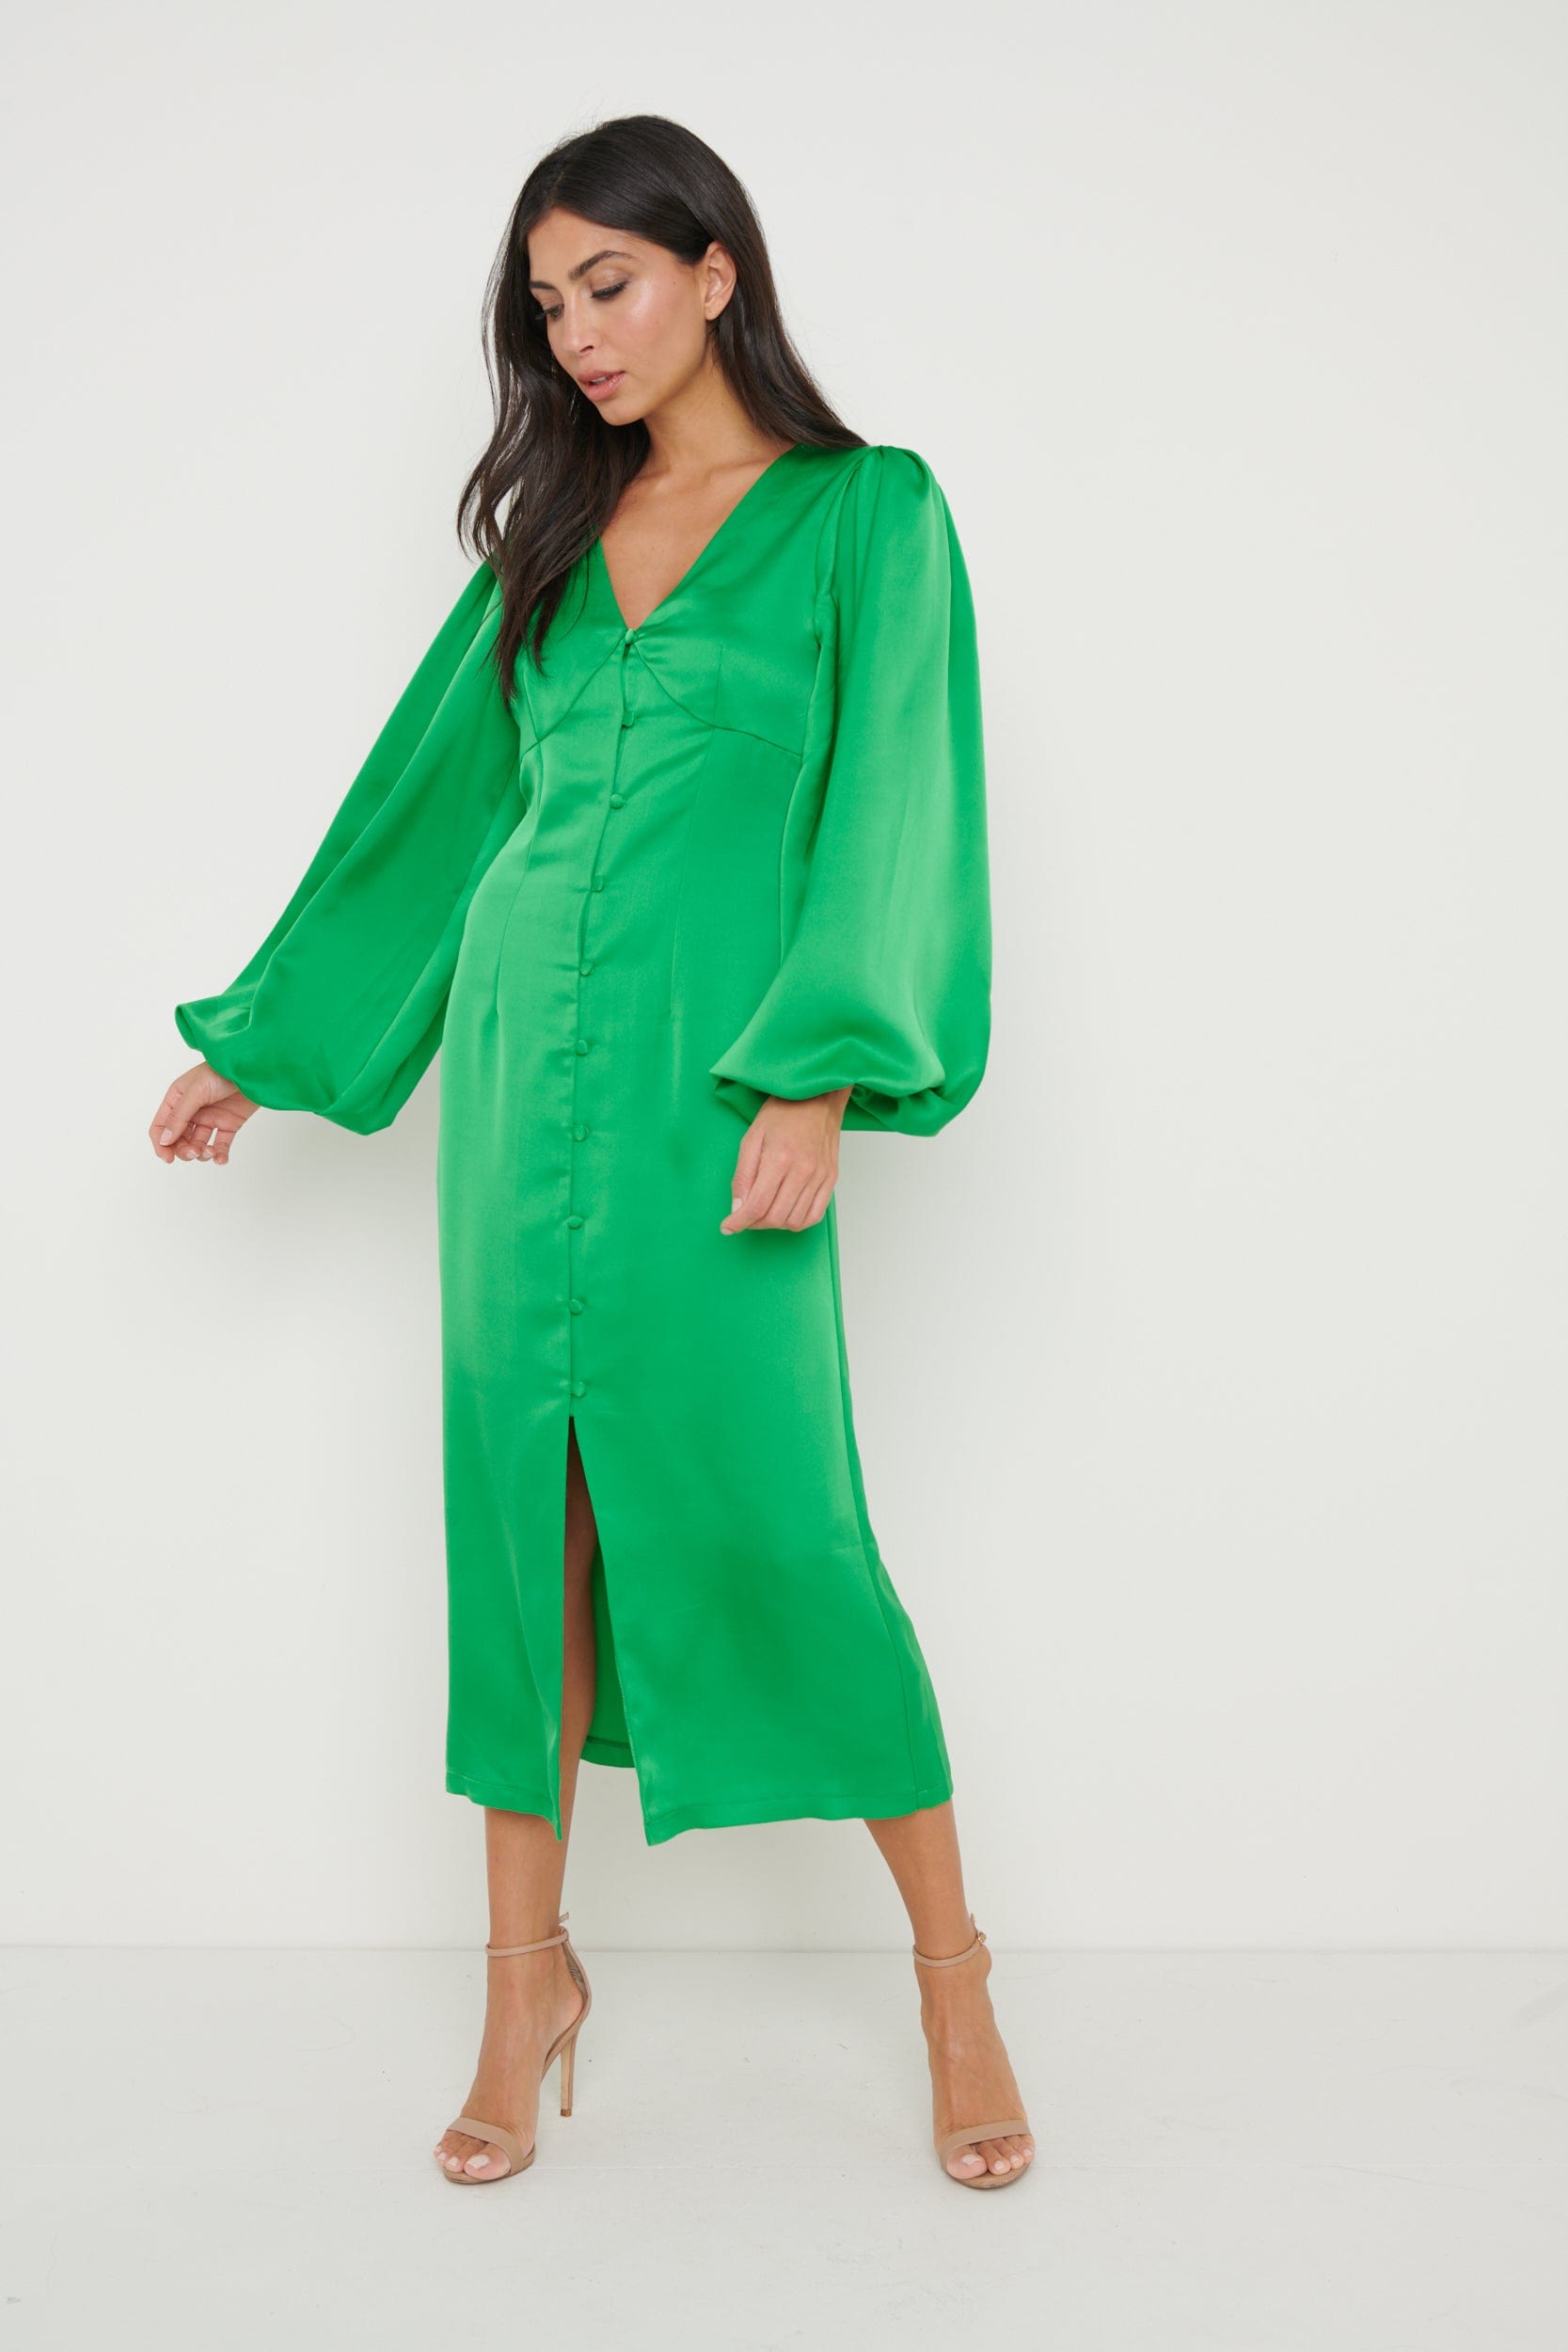 Naya Recycled Midaxi Dress - Emerald Green, 8